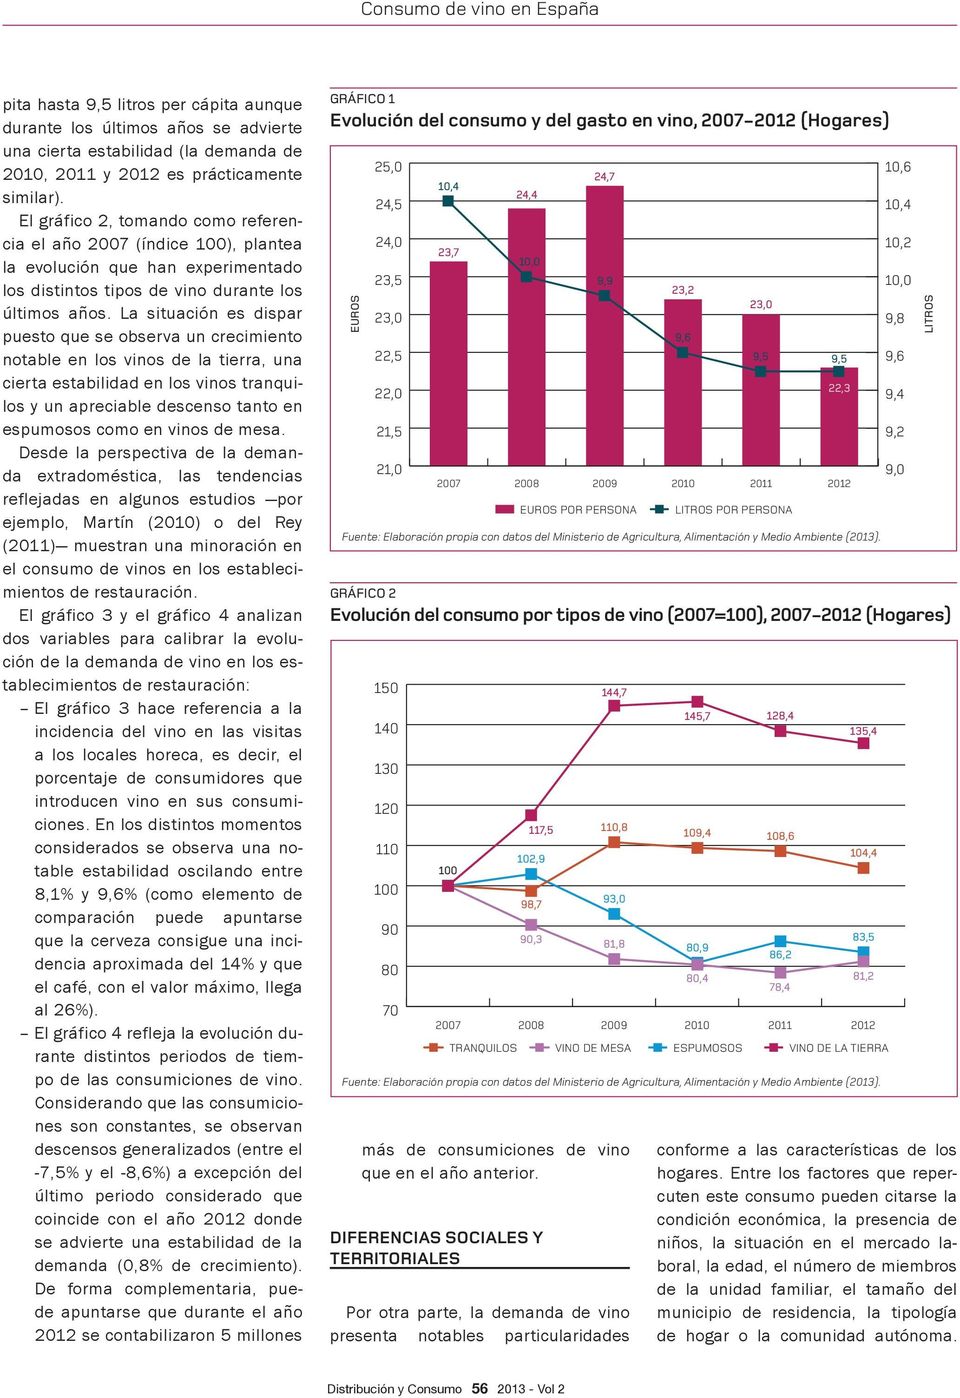 tendencias (2011) muestran una minoración en el consumo de vinos en los estableci- dos variables para calibrar la evolución de la demanda de vino en los establecimientos de restauración: incidencia